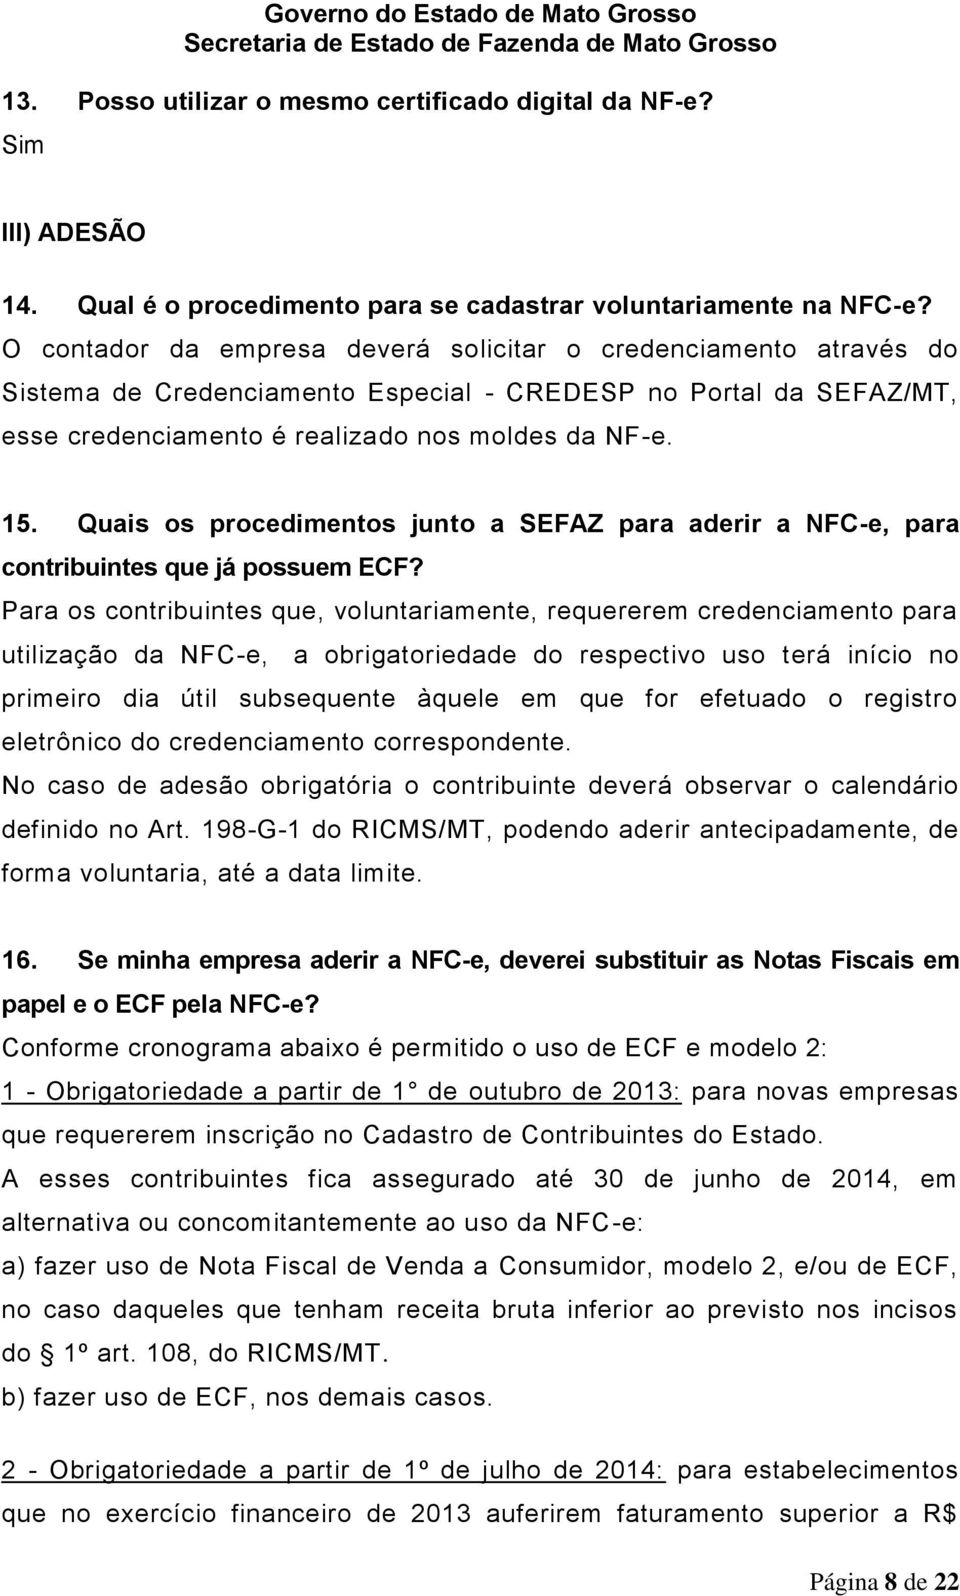 Quais os procedimentos junto a SEFAZ para aderir a NFC-e, para contribuintes que já possuem ECF?